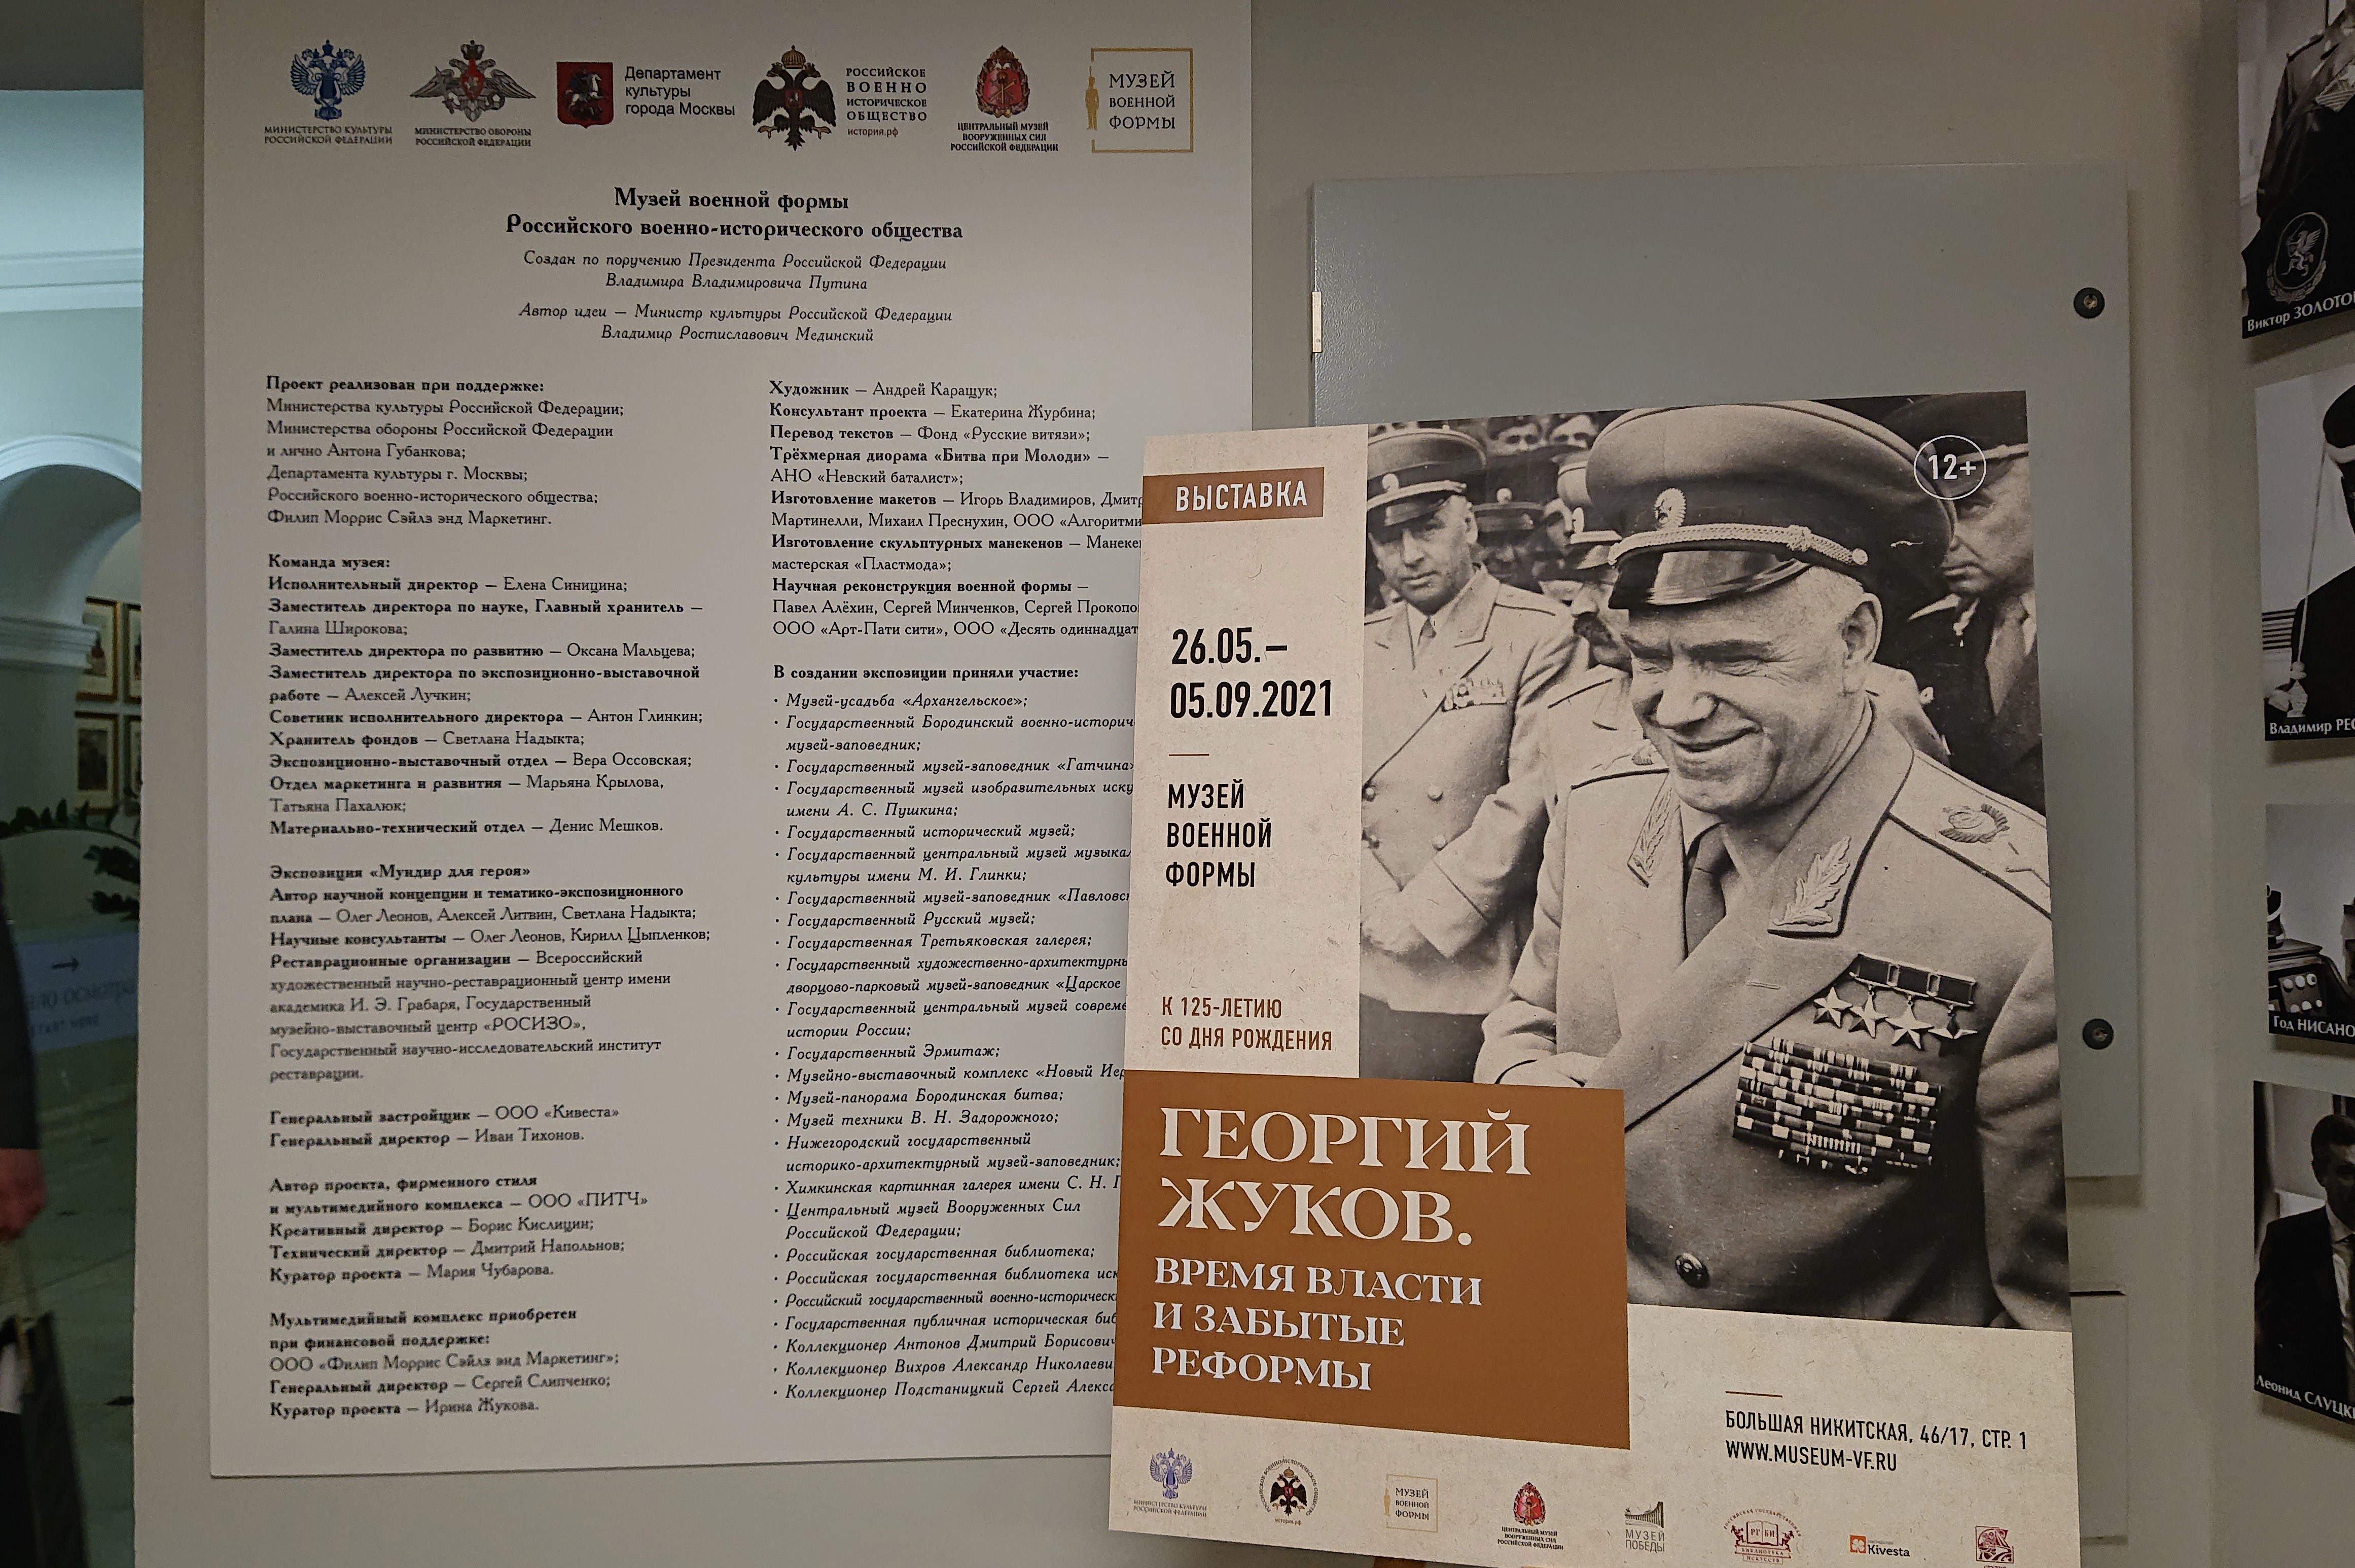 РГБИ передала Музею военной формы коллекционный альбом из фондов библиотеки